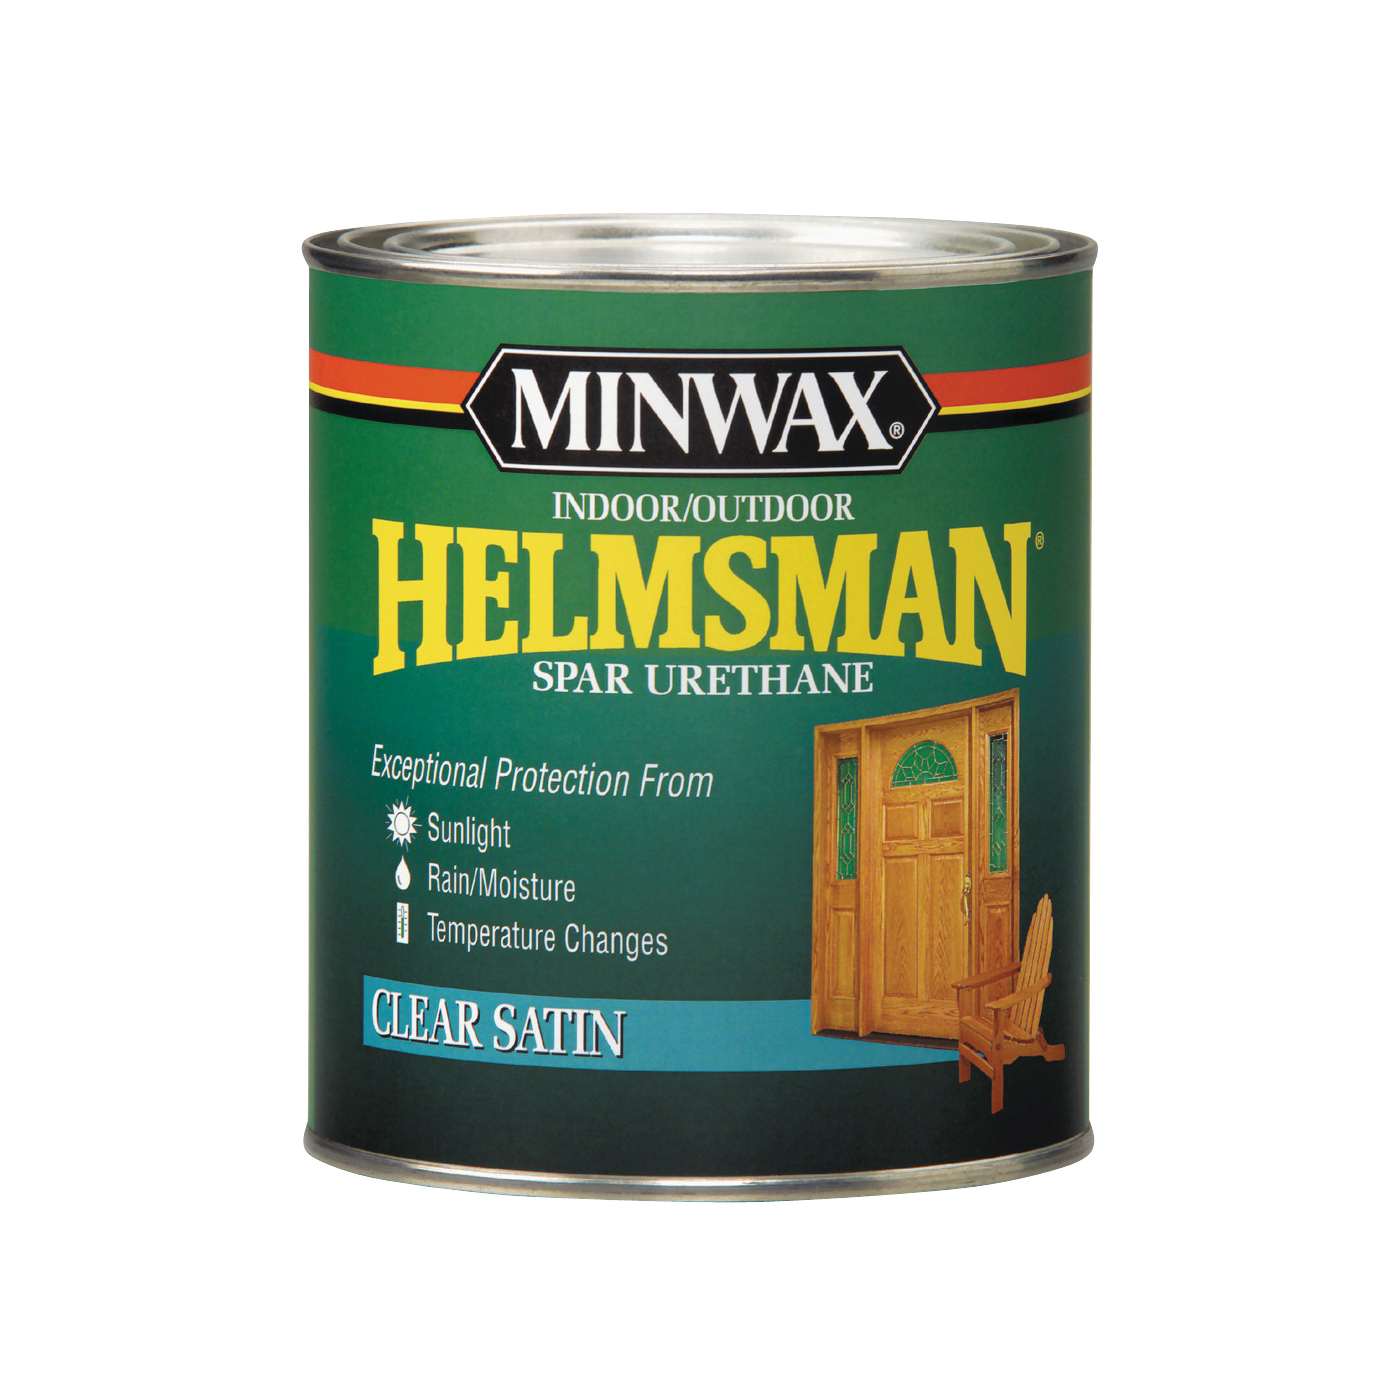 Helmsman 63205444 Spar Urethane Paint, Satin, Clear, Liquid, 1 qt, Can